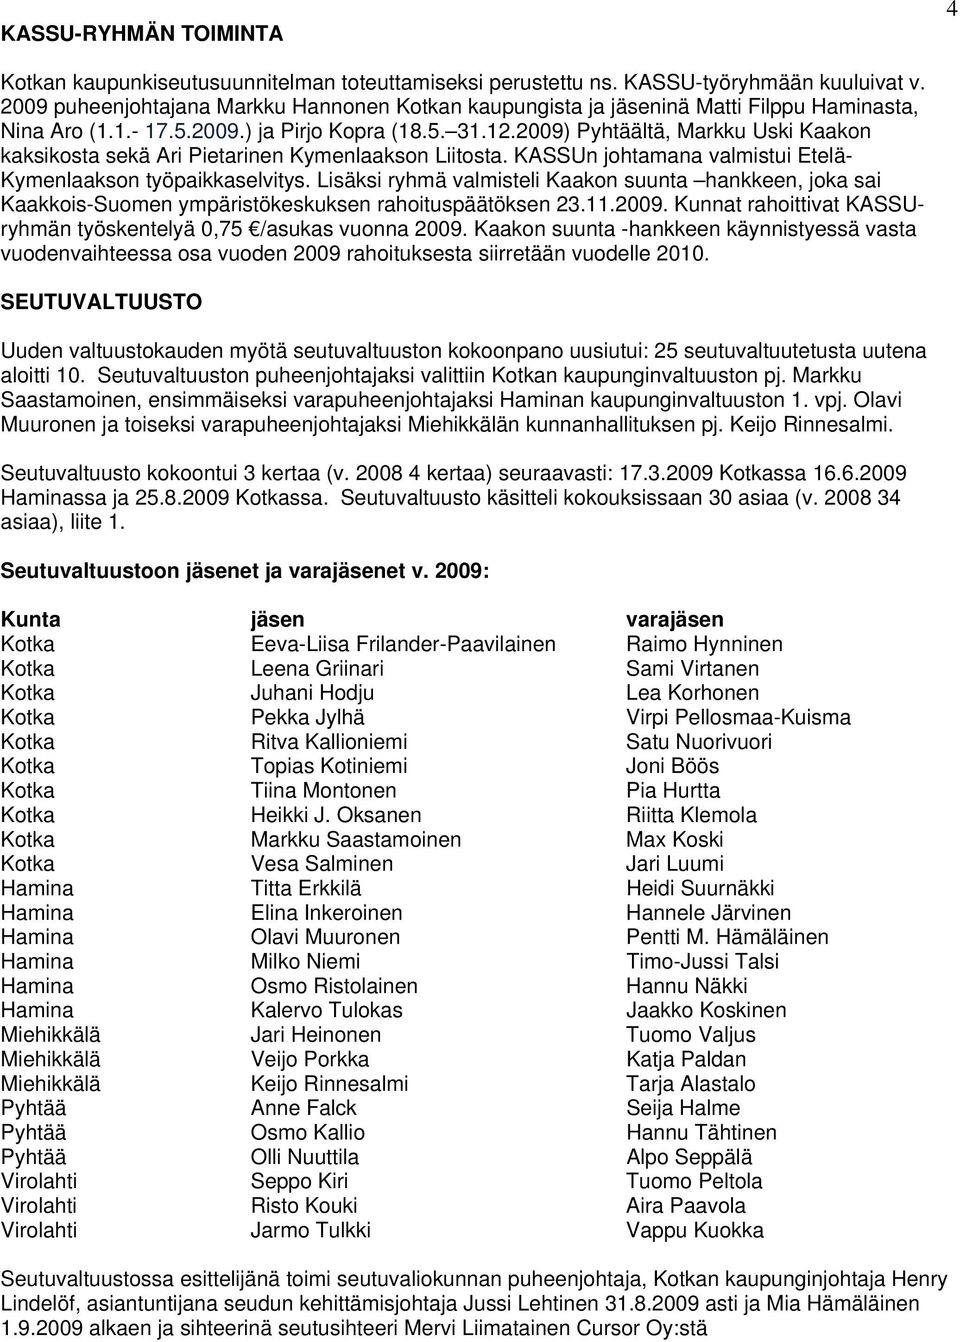 2009) Pyhtäältä, Markku Uski Kaakon kaksikosta sekä Ari Pietarinen Kymenlaakson Liitosta. KASSUn johtamana valmistui Etelä- Kymenlaakson työpaikkaselvitys.